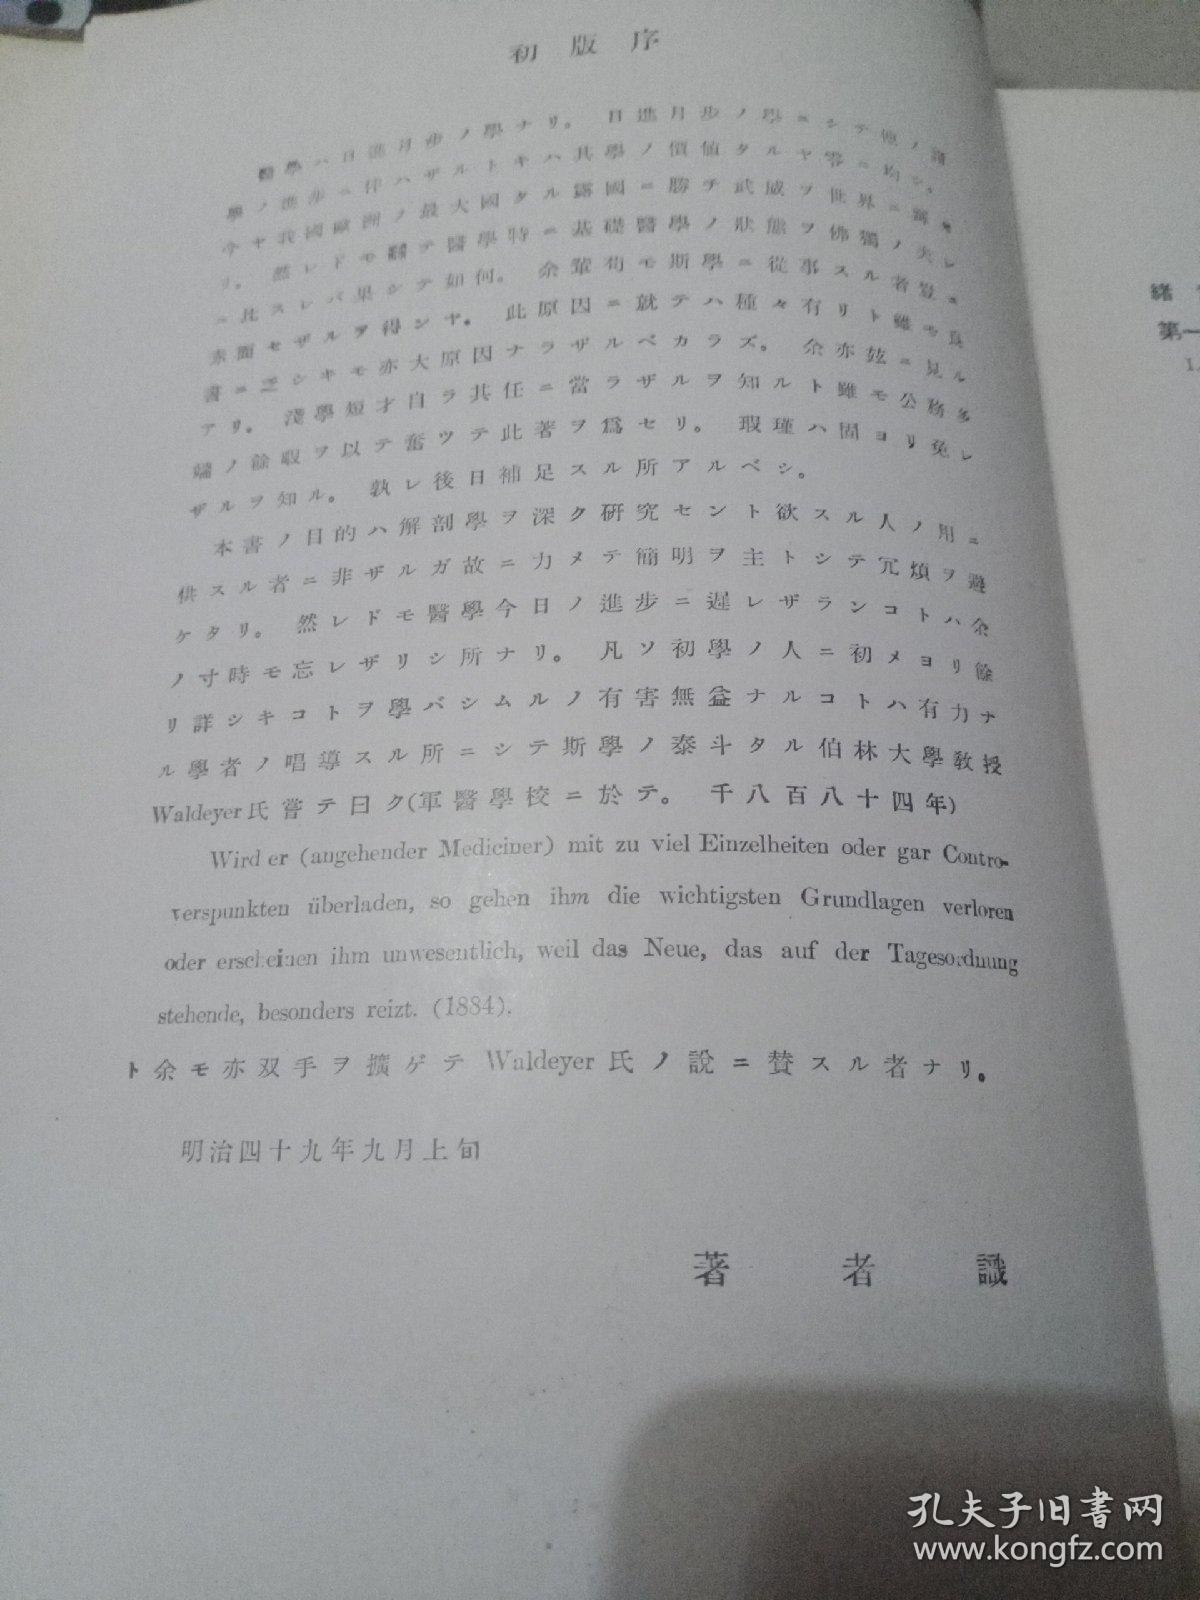 日文版(近世解剖学上下)昭和18年